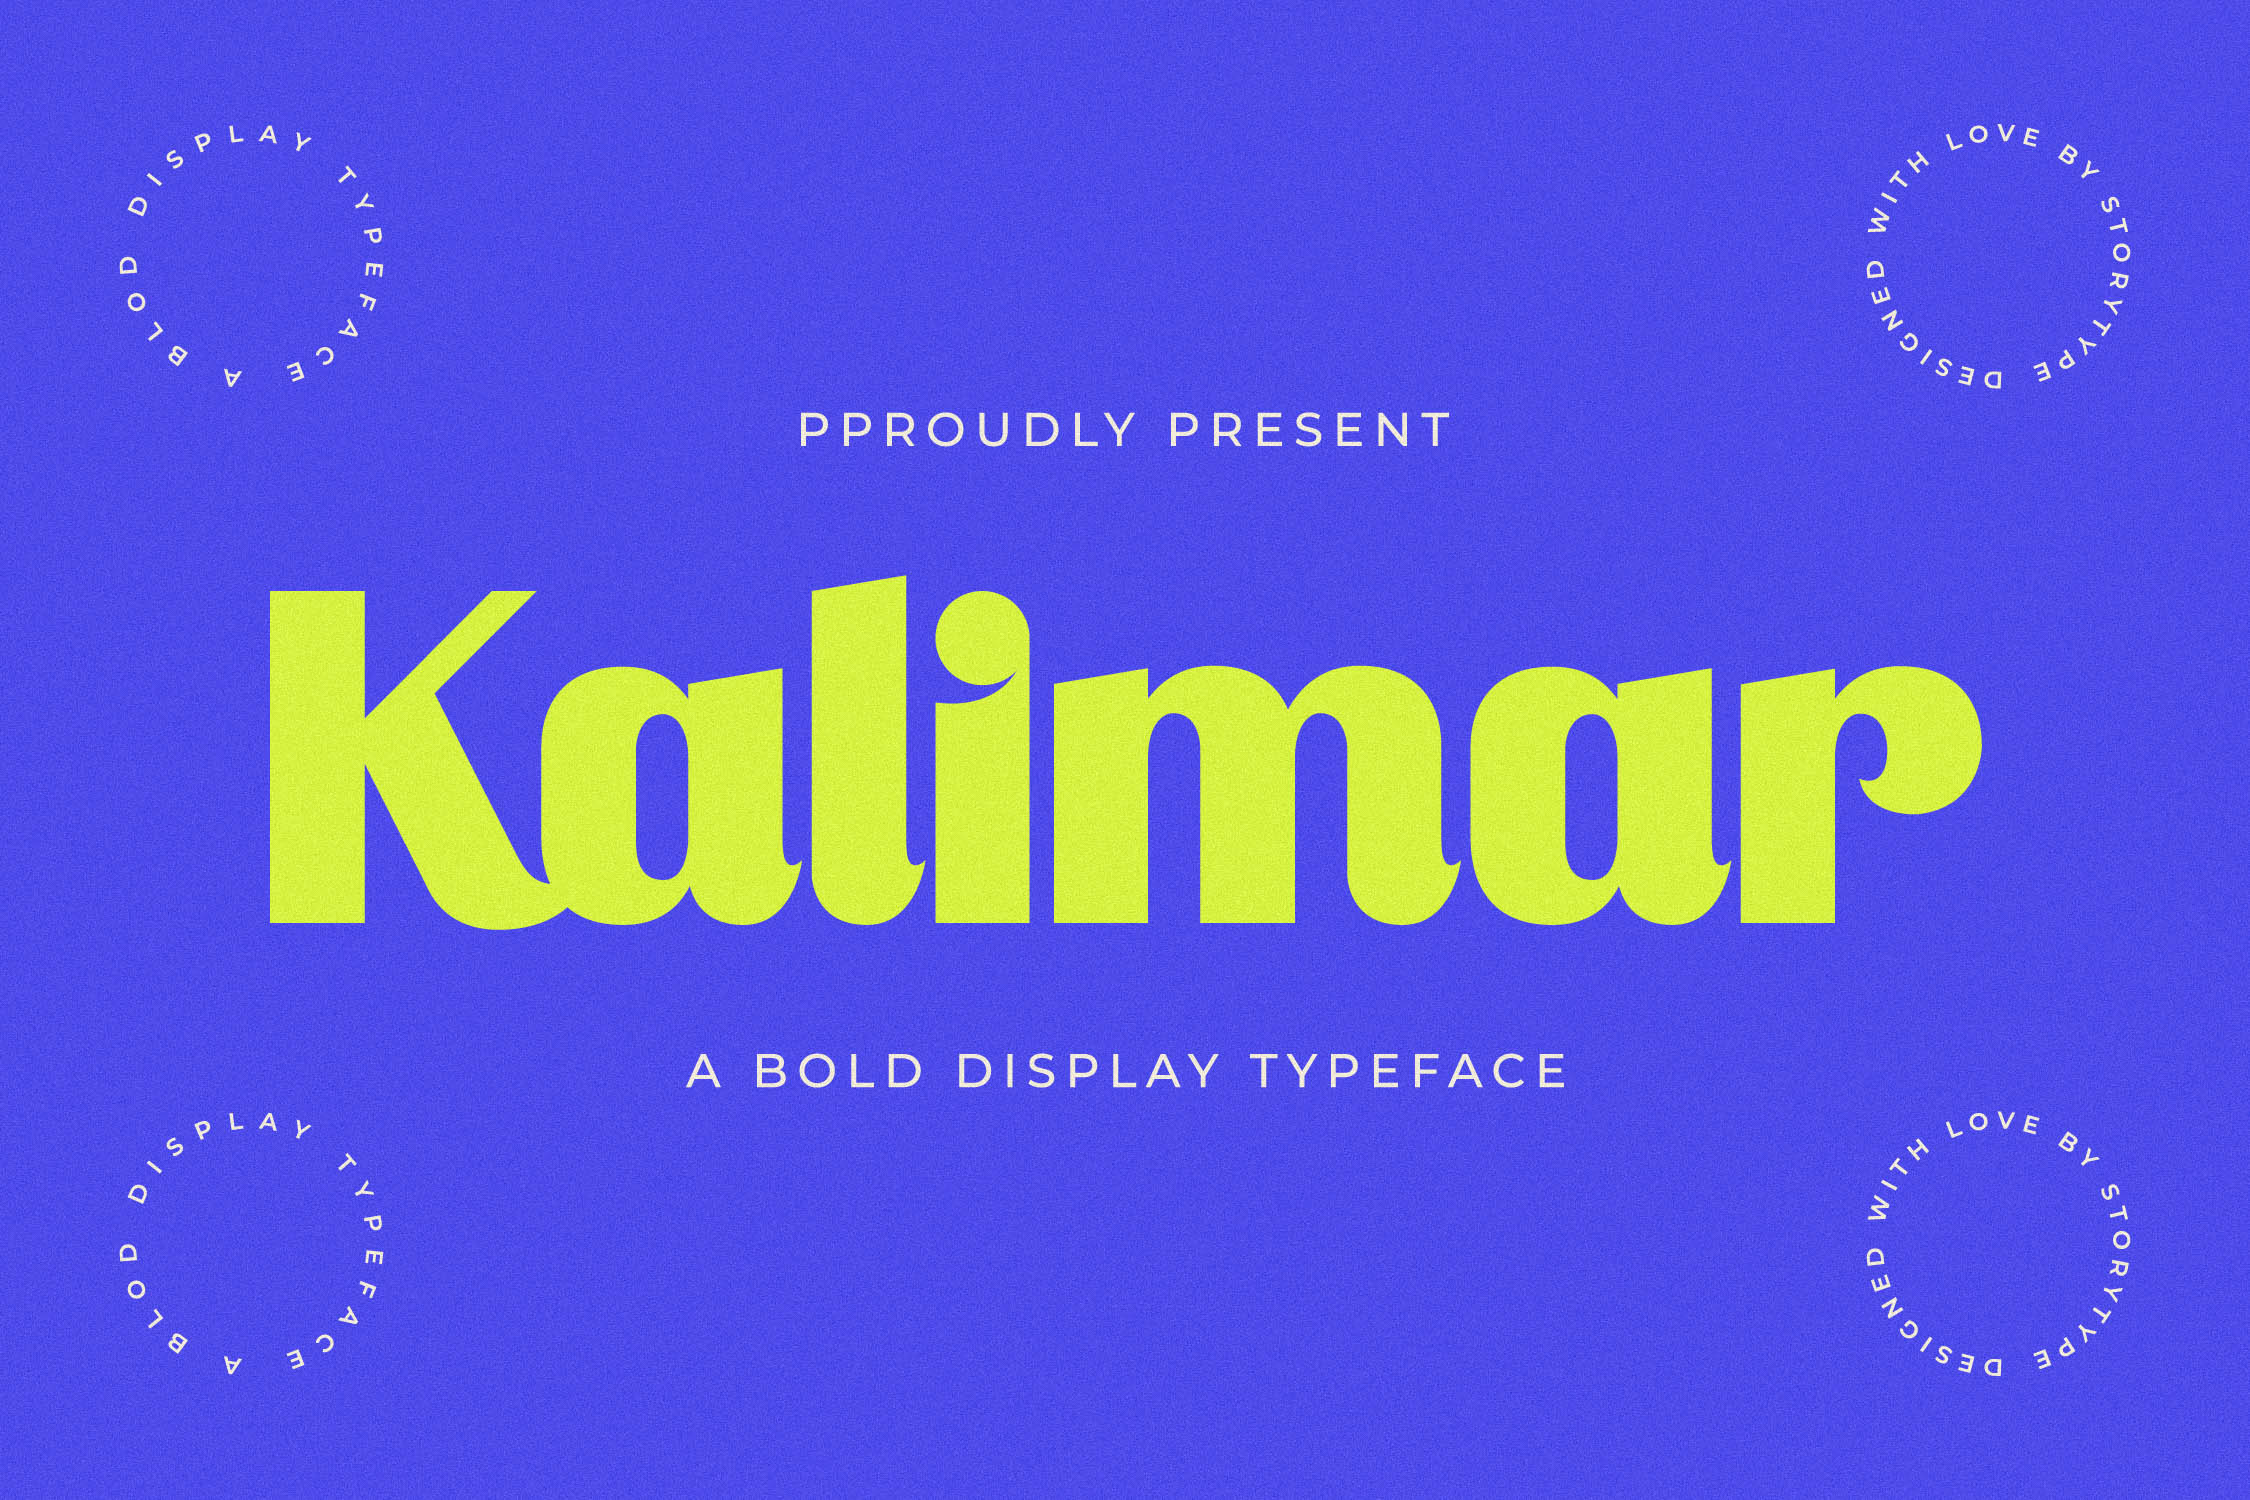 Kalimar Display Font